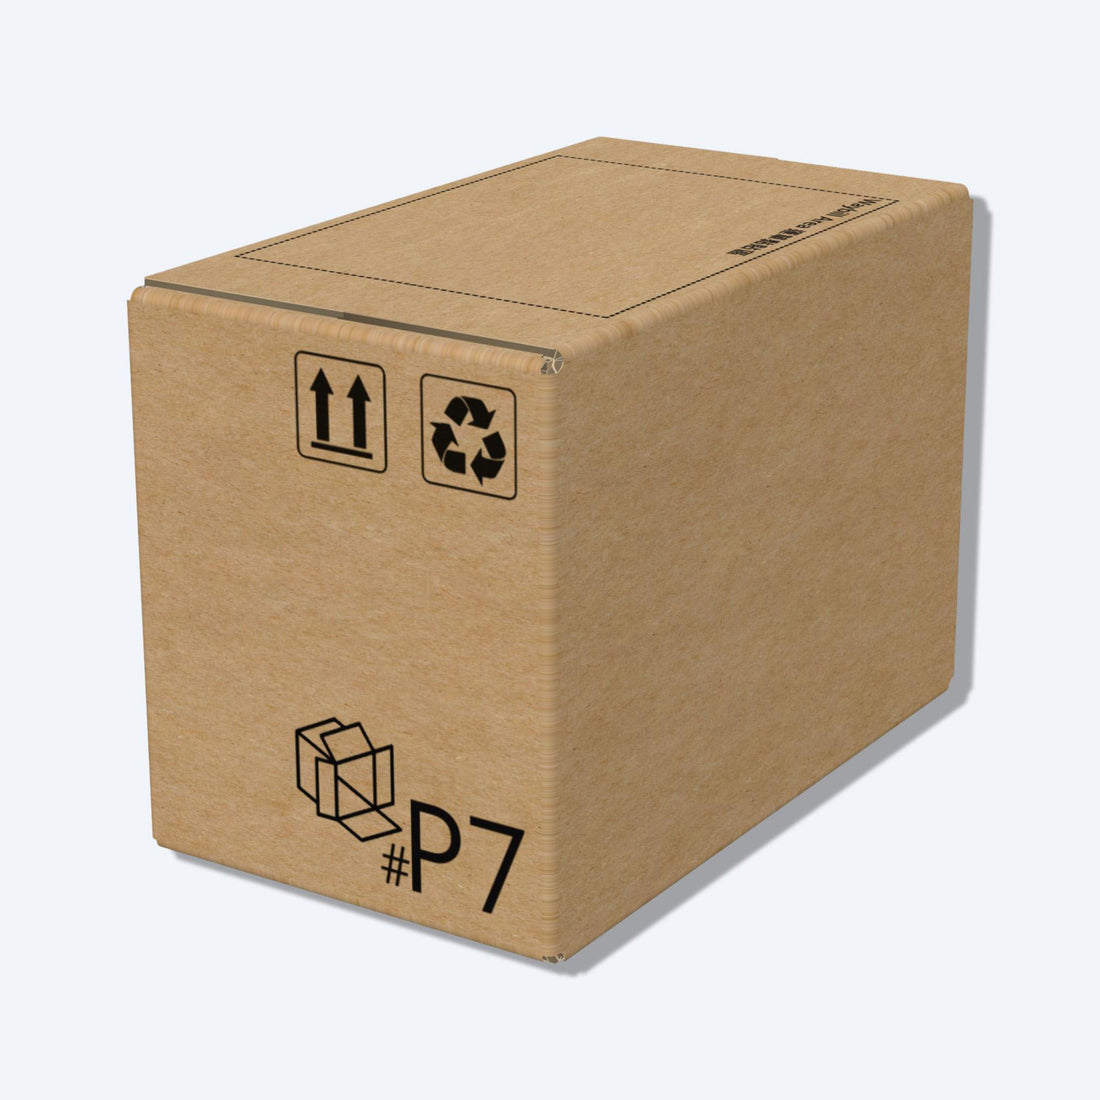 堅固的啡色順豐速運P7尺寸紙箱正面圖，這款快遞紙箱專為順豐速運設計。